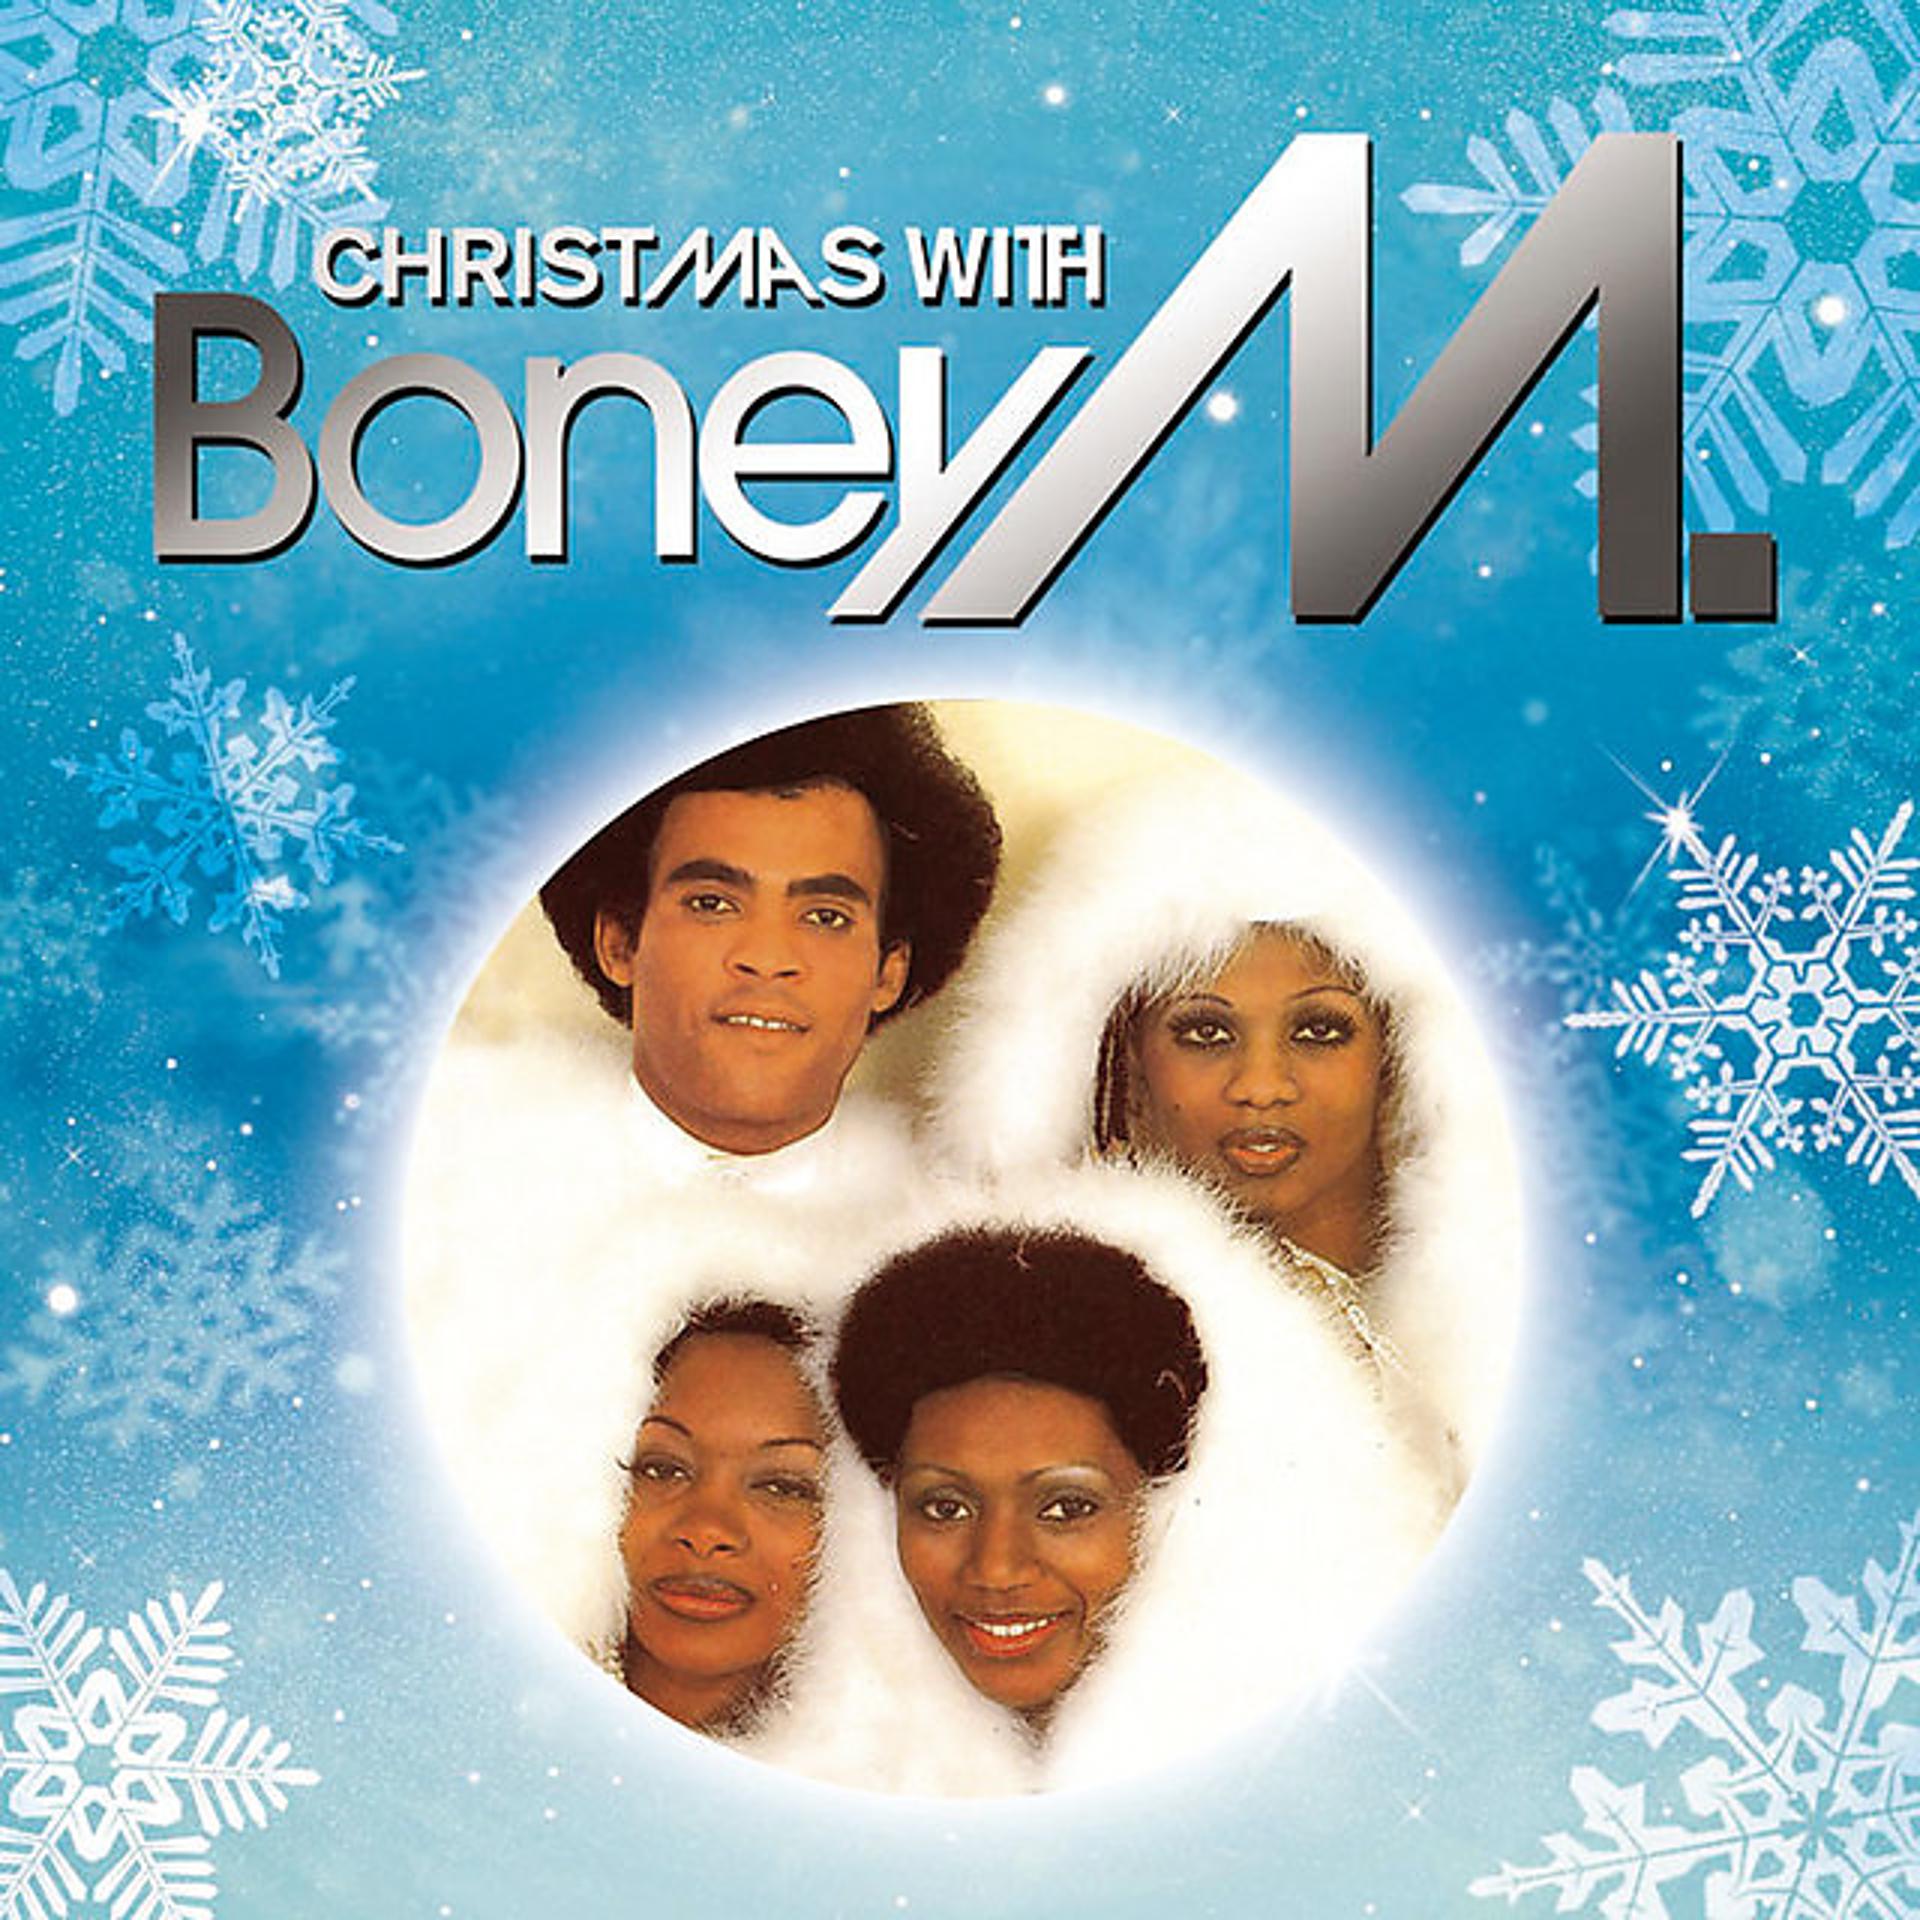 Boney m home. Бони м Christmas 1981. Boney m Christmas album 1981. Группа Boney m. альбомы 1981. Рэджи ЦИБО Бони м.